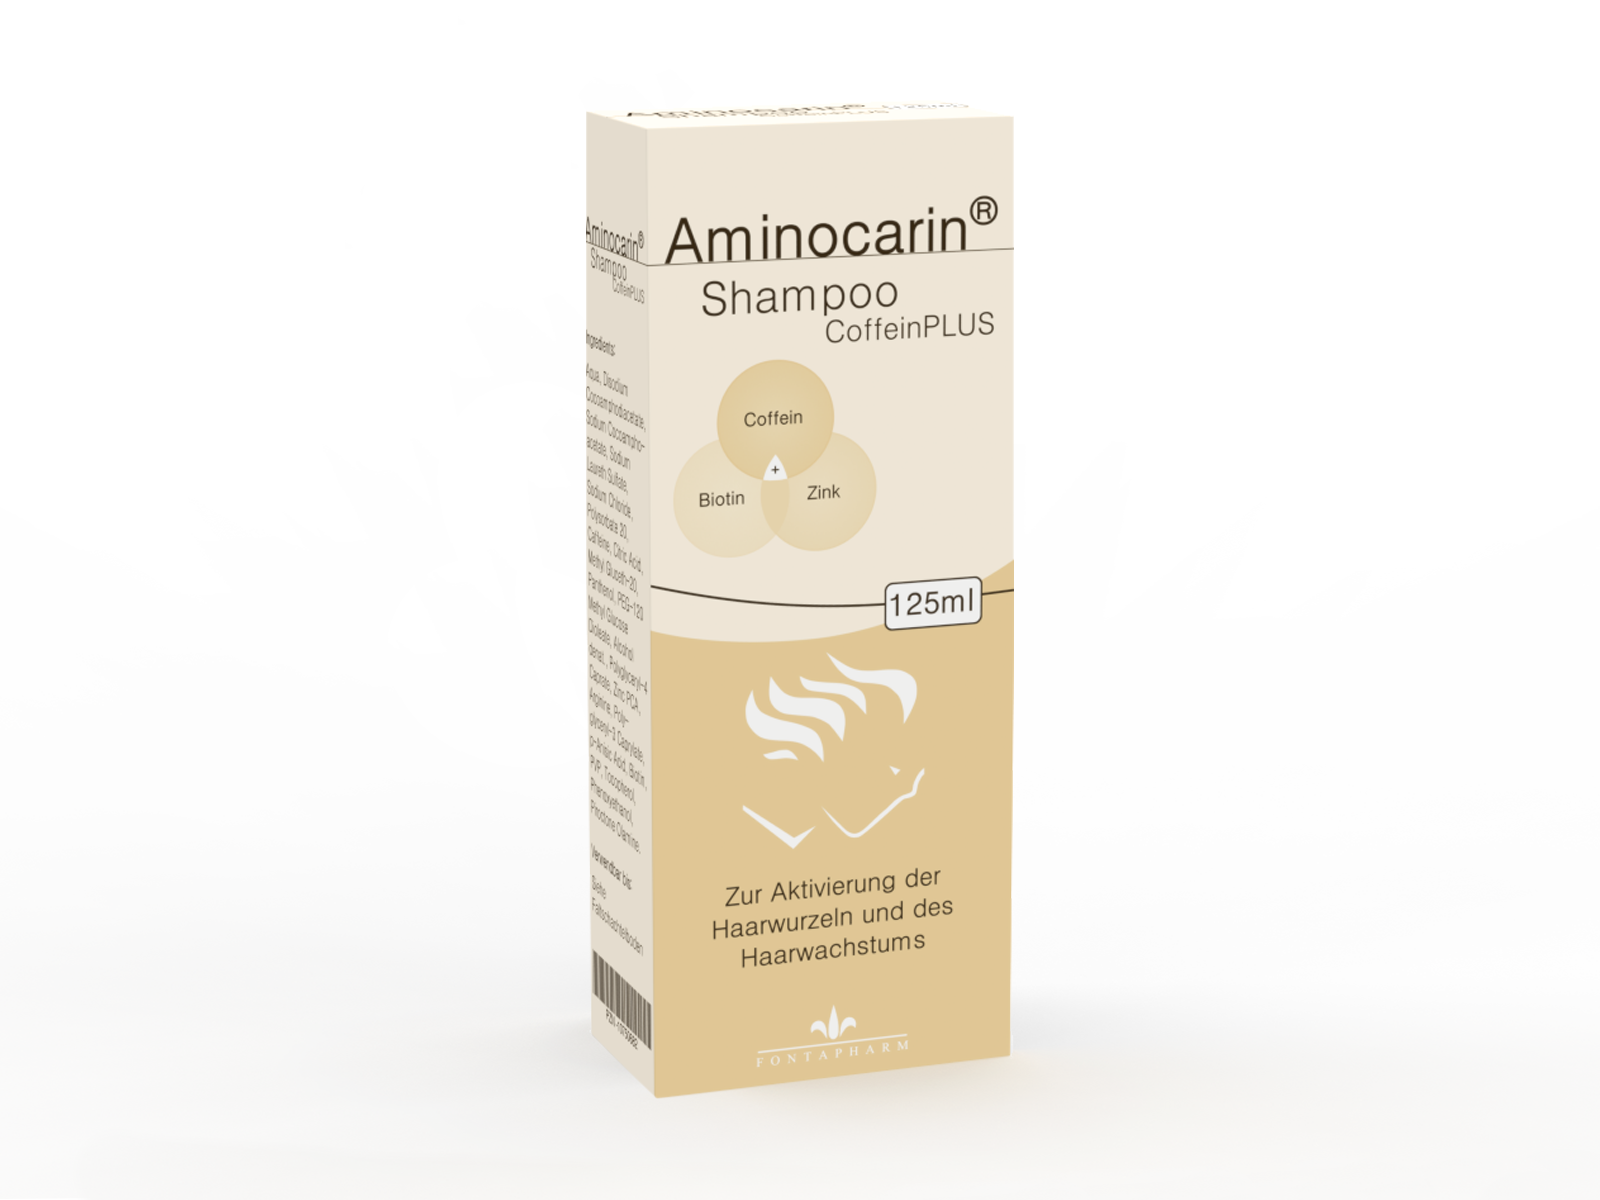 Aminocarin Coffein Plus schampoo zusätzlich mit Zink Biotin und Panthenol als Unterstützung gegen Haarausfall